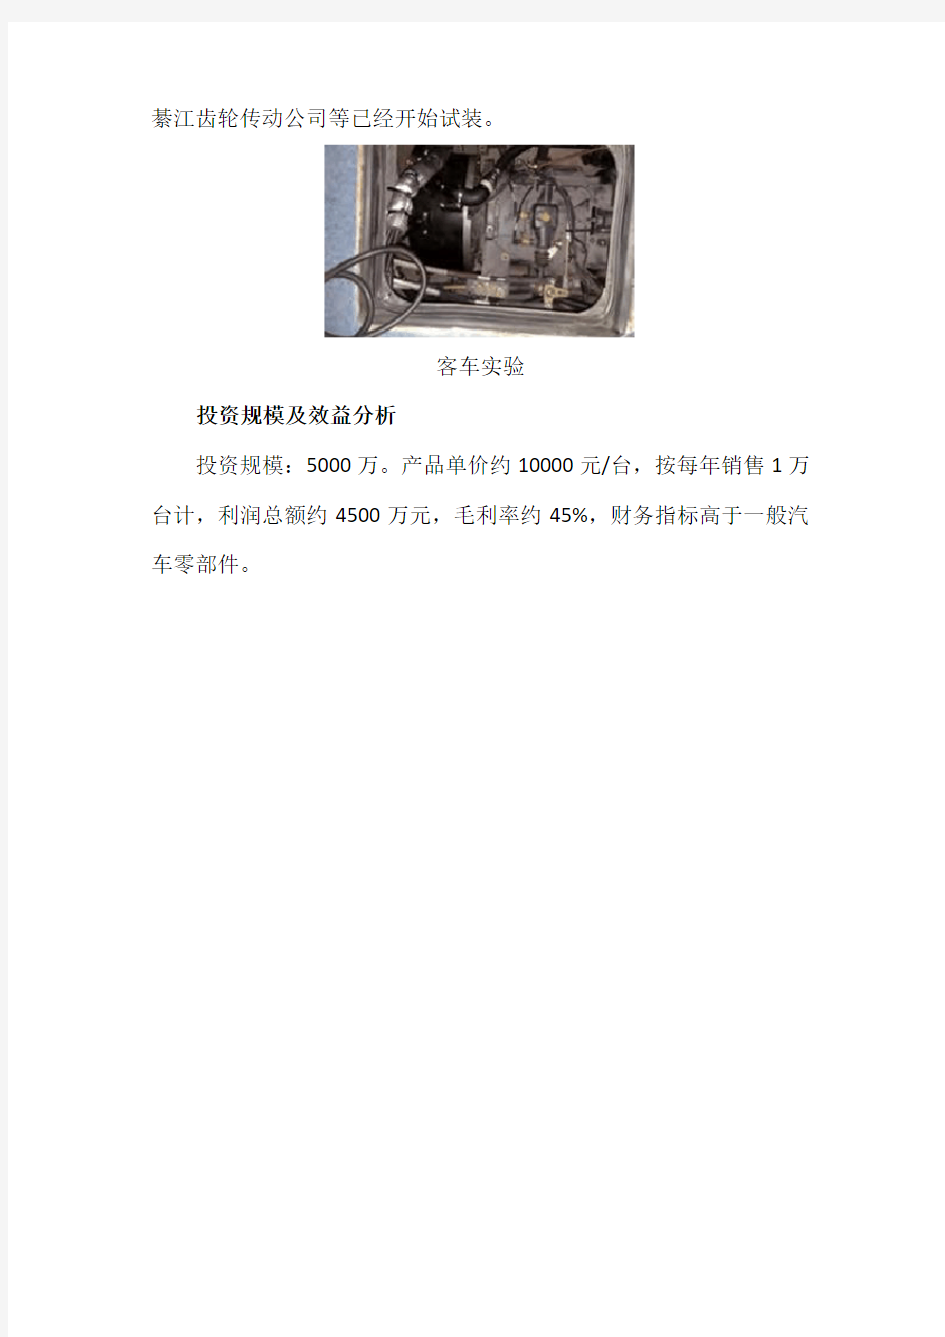 北京工业大学科技成果——电磁液冷缓速器